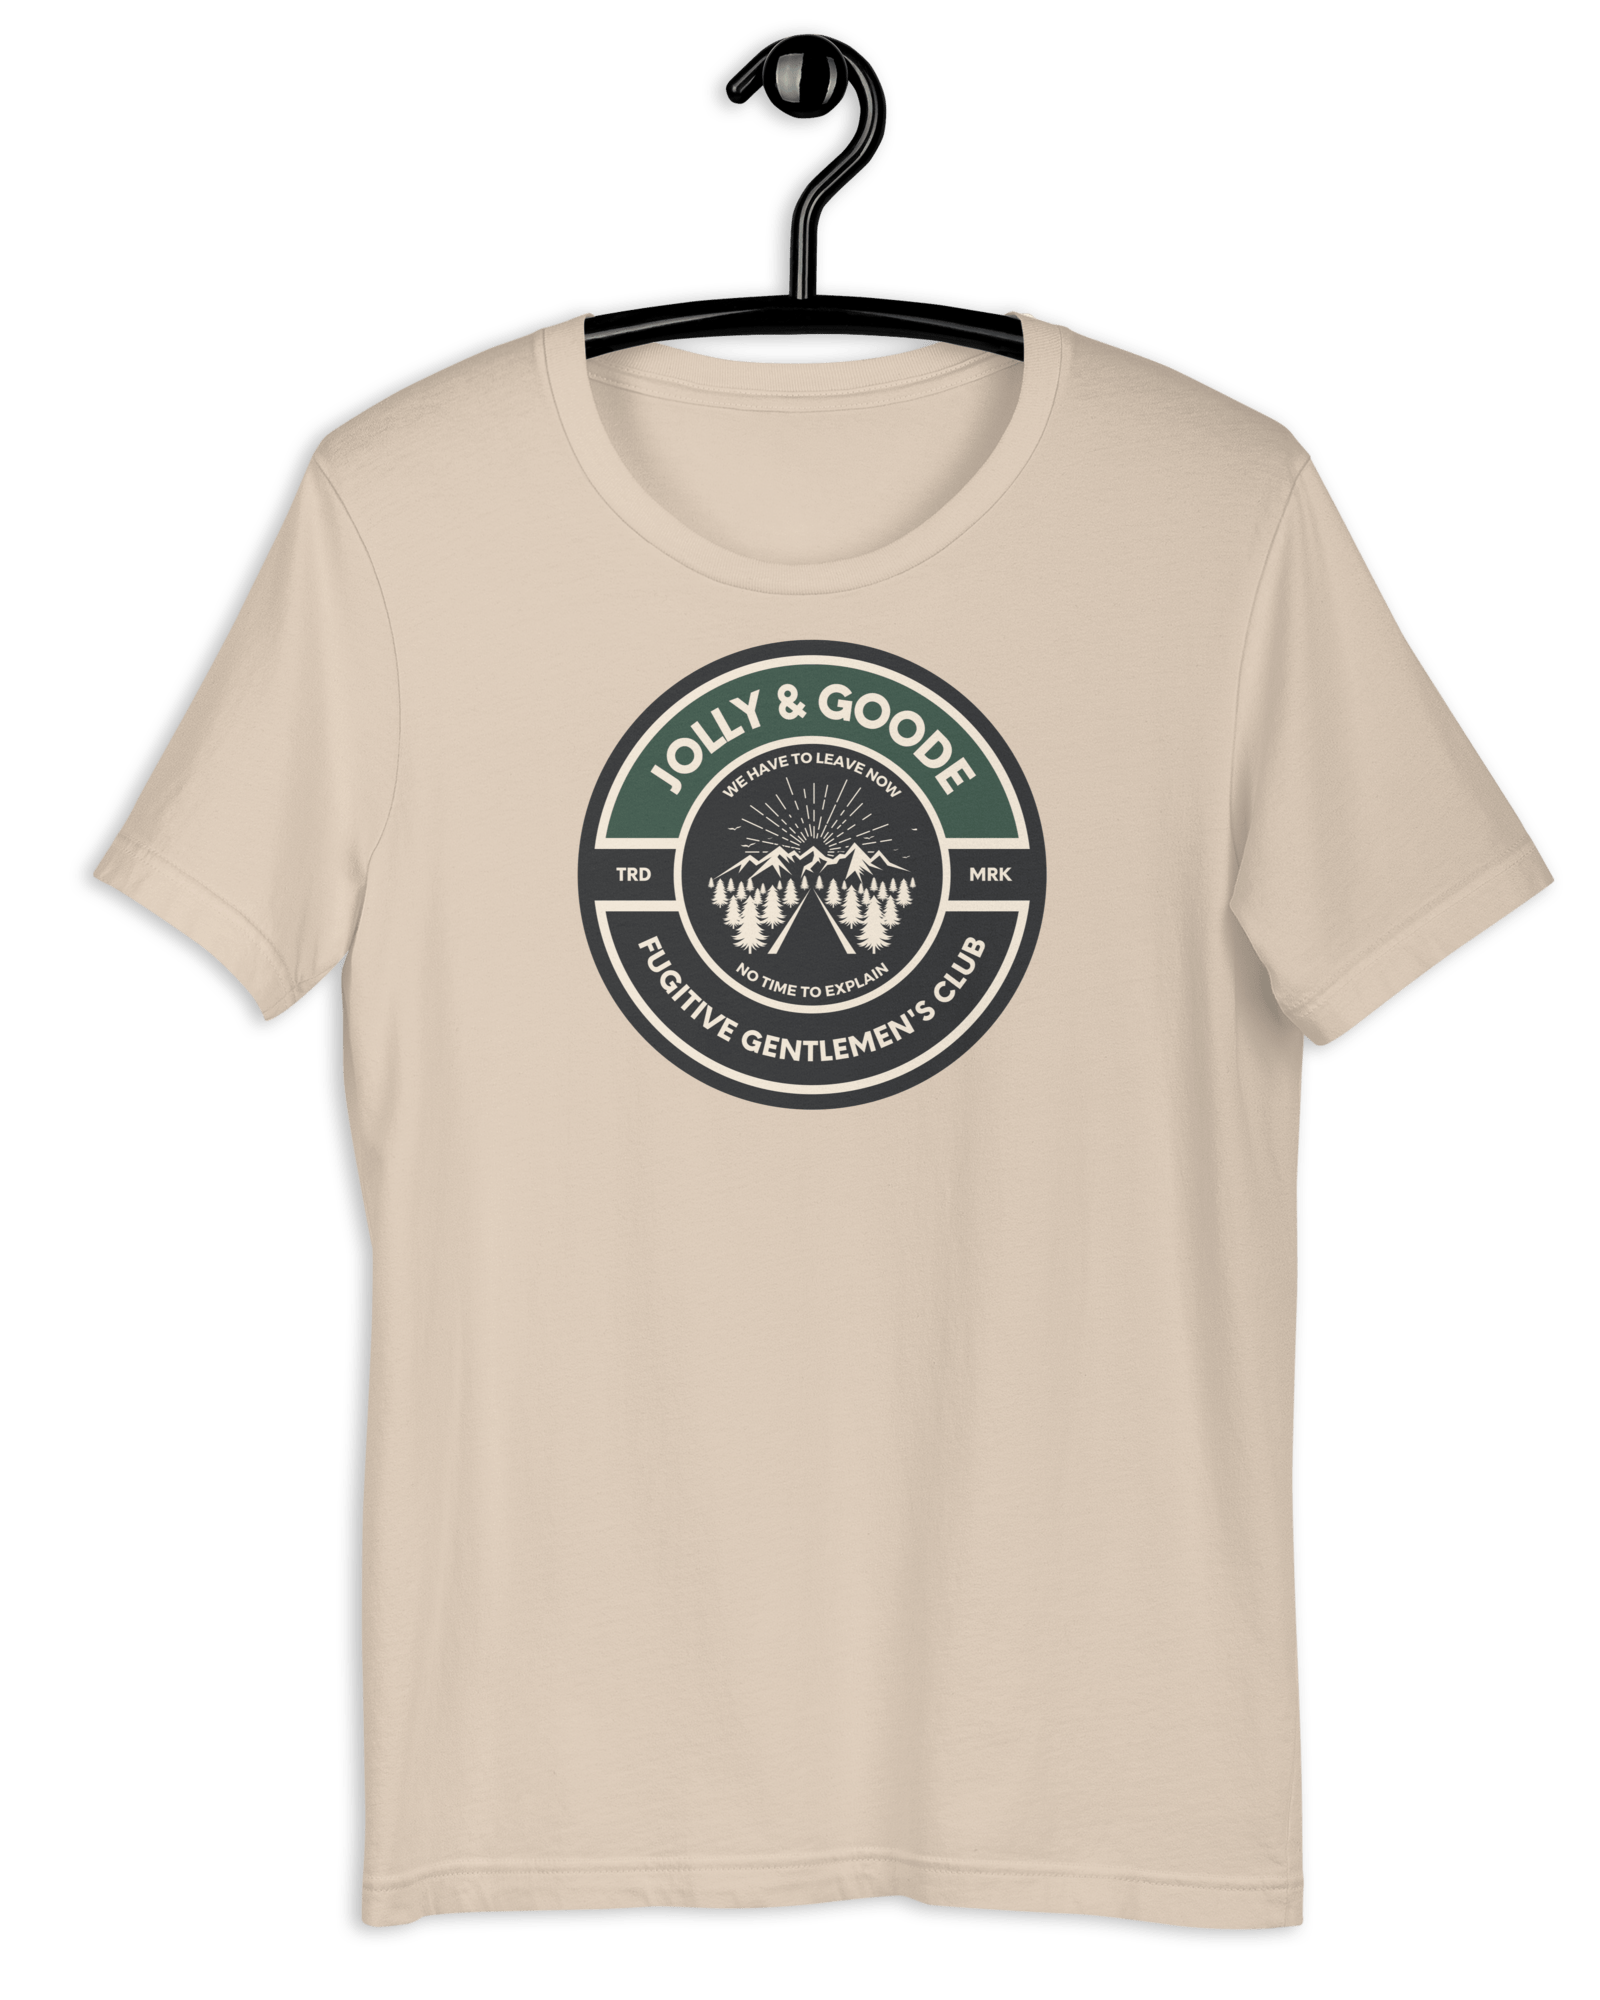 Fugitive Gentlemen's Club T-shirt Soft Cream / S Shirts & Tops Jolly & Goode